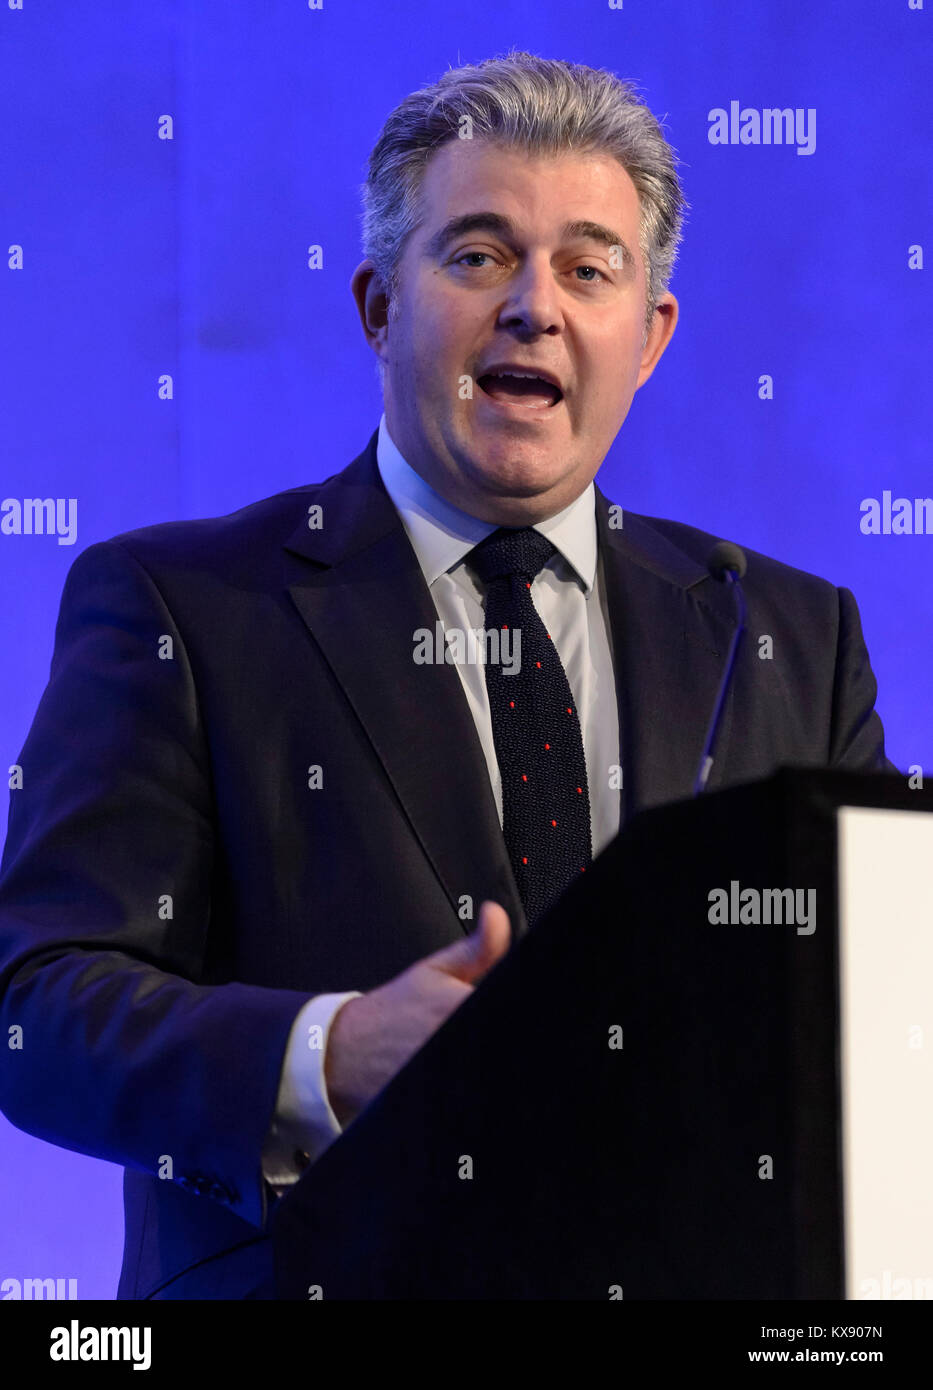 MP Brandon Lewis s'exprimant lors d'une conférence en 2016 à Londres. Il a été nommé président du parti conservateur et ministre sans portefeuille en 2018 Banque D'Images